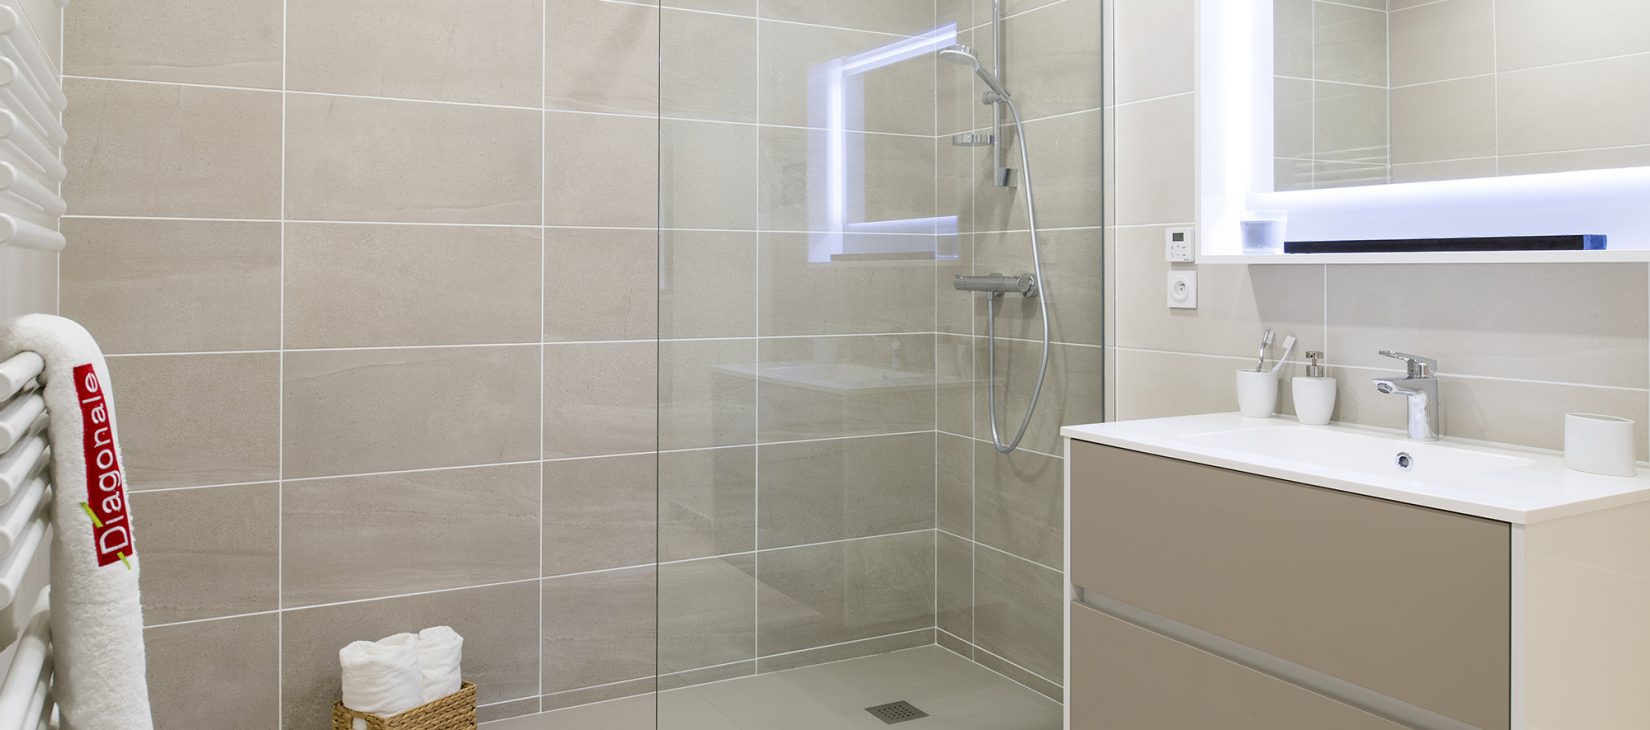 Home Concept par Diagonale : une salle de bains avec grande douche recréée pour votre projet de logement neuf